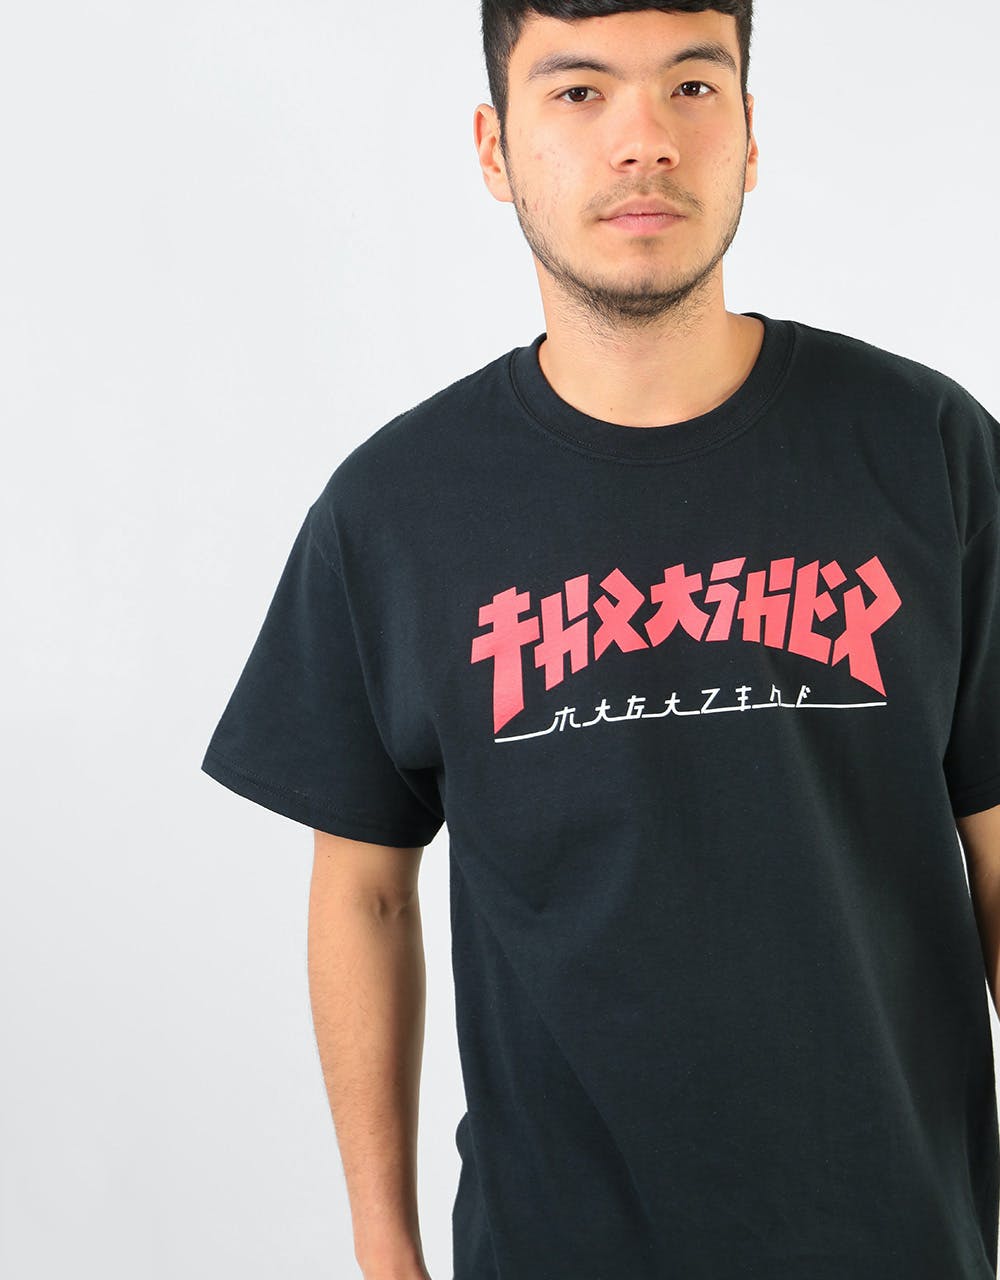 Thrasher Godzilla T-Shirt - Black